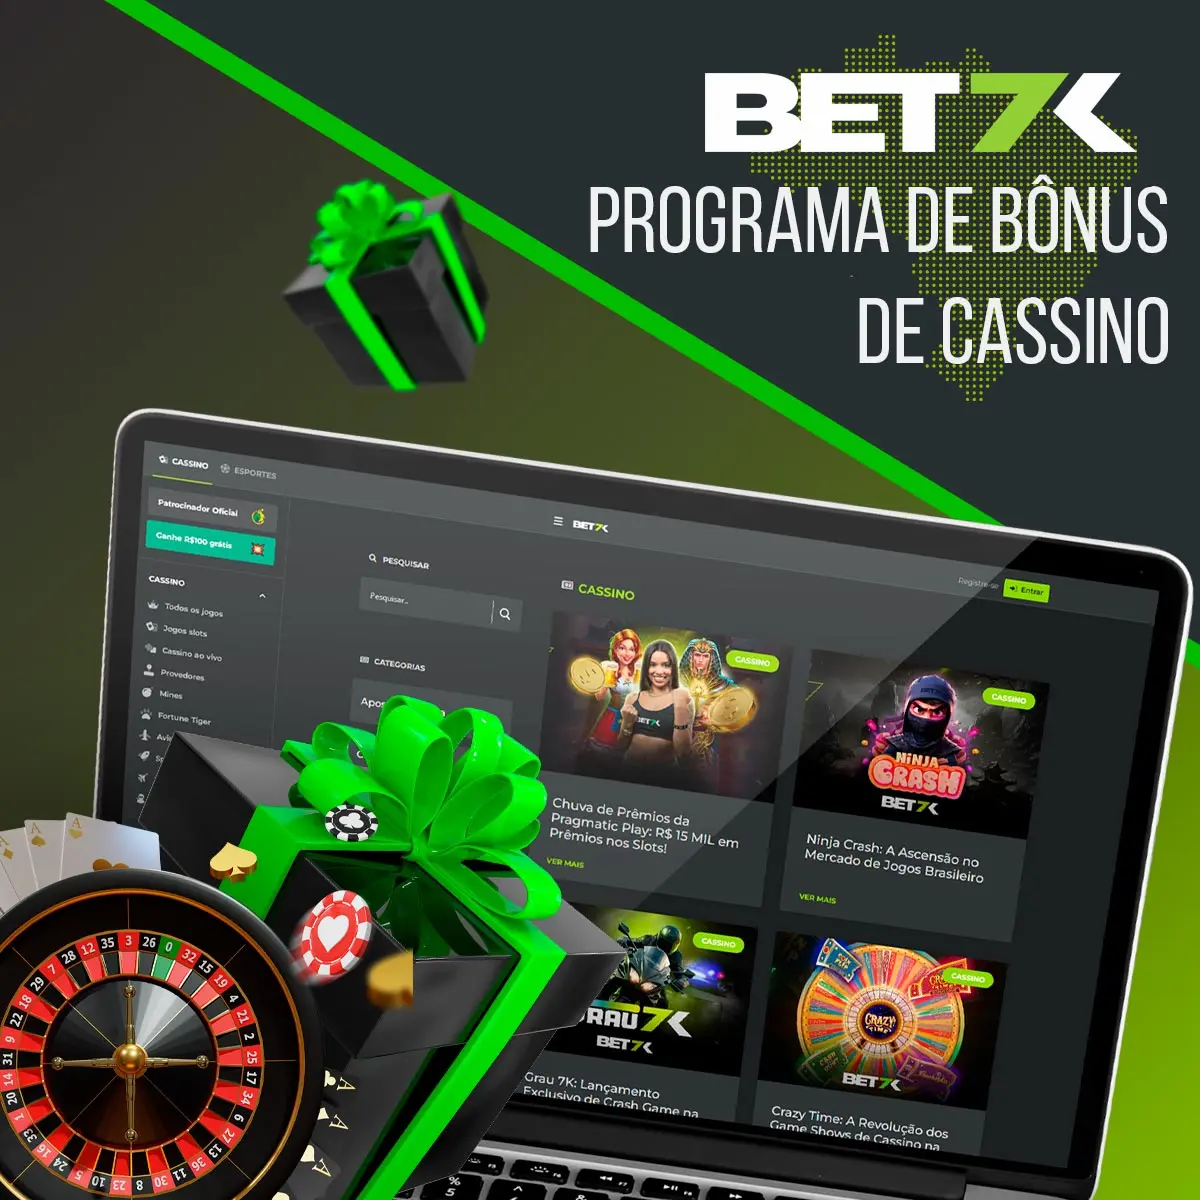 Visão geral do bônus de cassino da casa de apostas Bet7k no Brasil